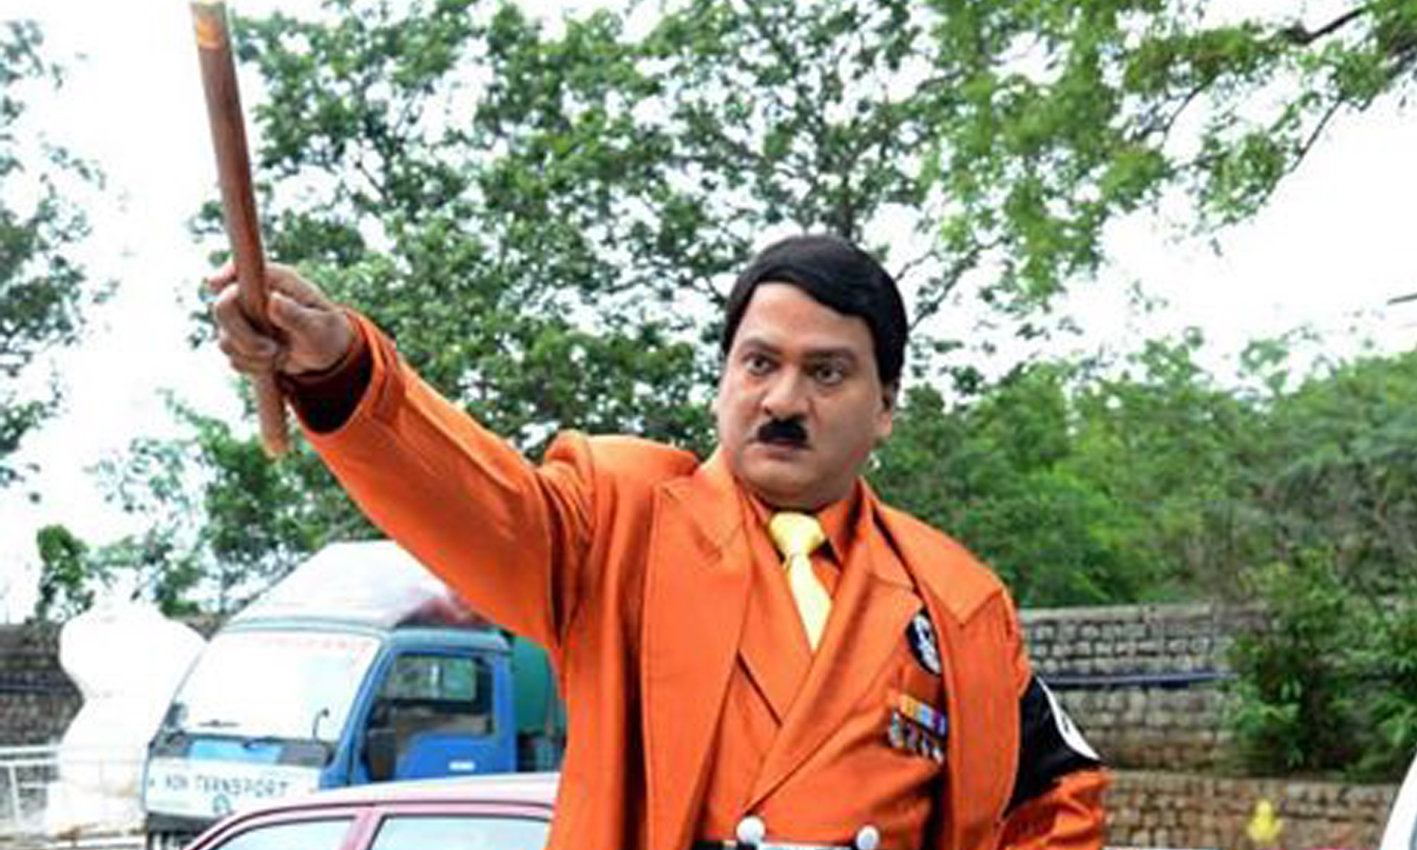 Rajendra Prasad as Hitler, rajendra prasad in hitler role, rajendra prasad hitler role in Top ranker movie, hitler role by rajendra prasad.